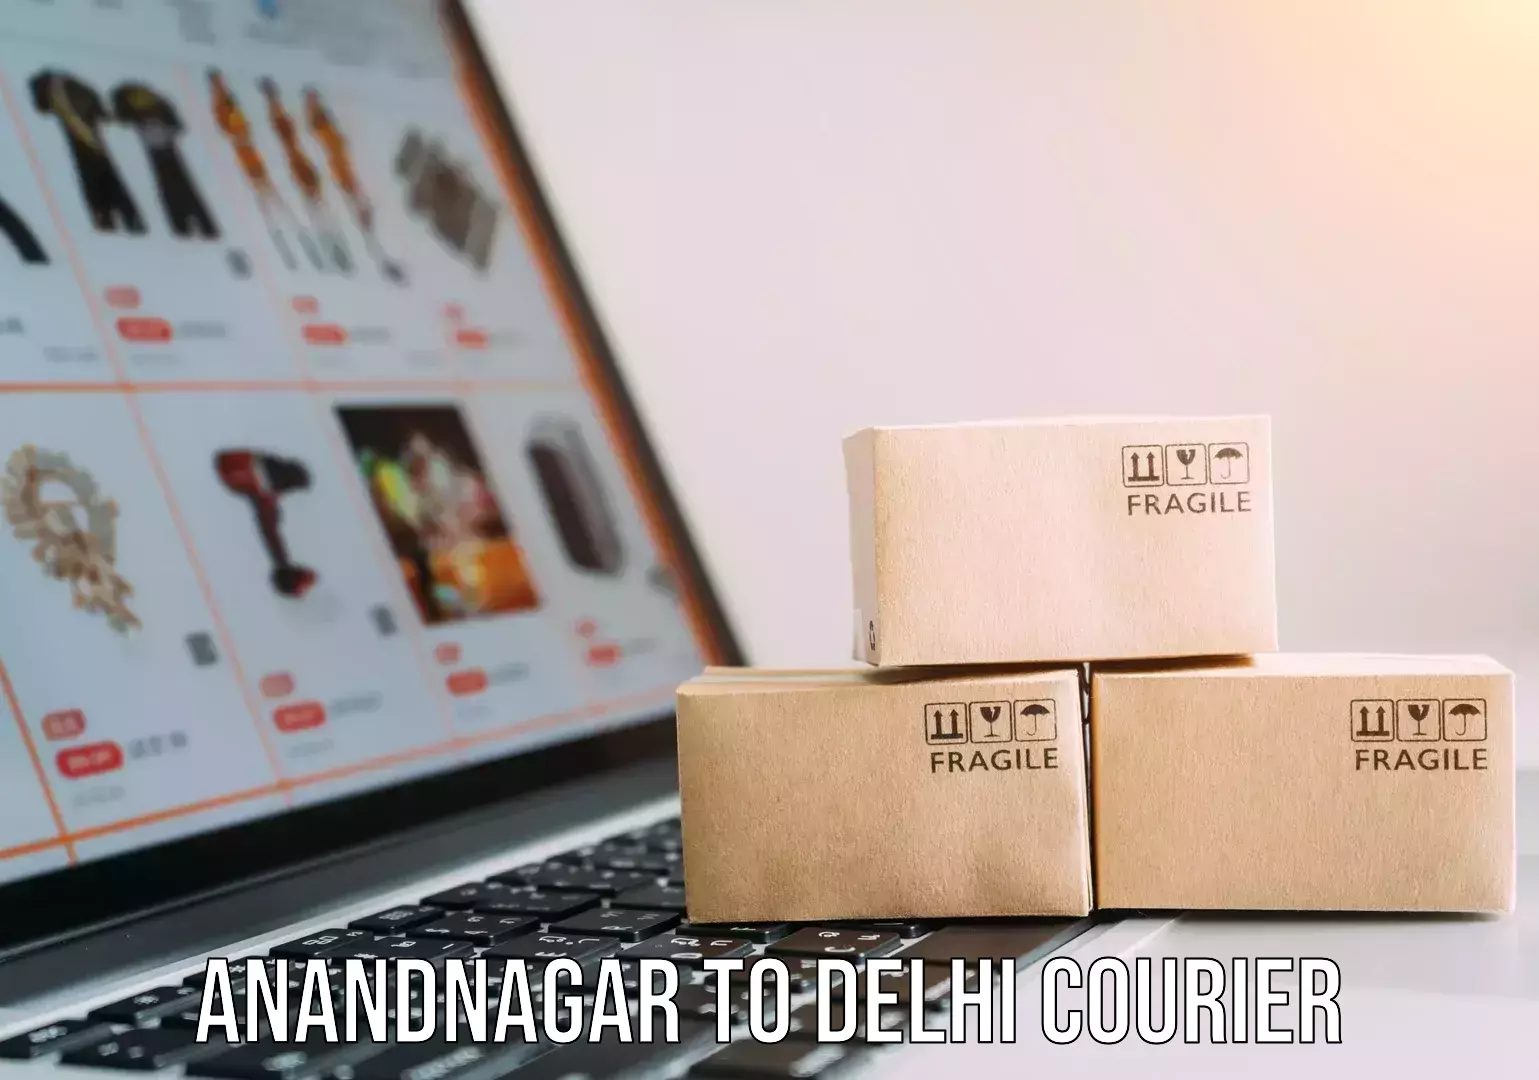 Shipping and handling Anandnagar to Delhi